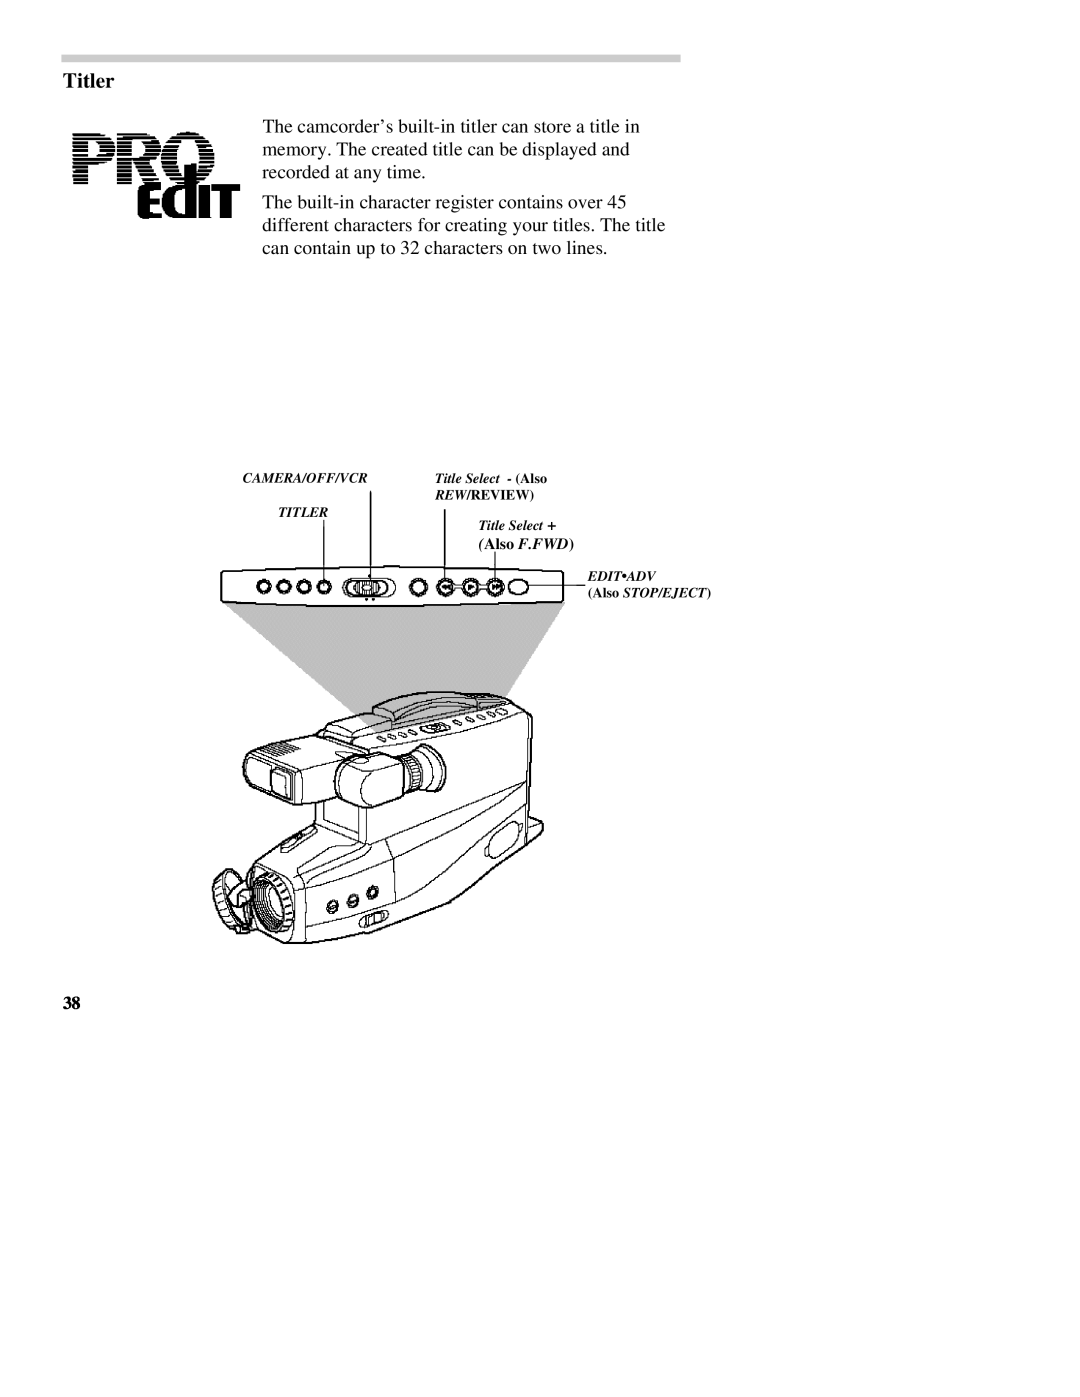 RCA CC437 manual Titler 